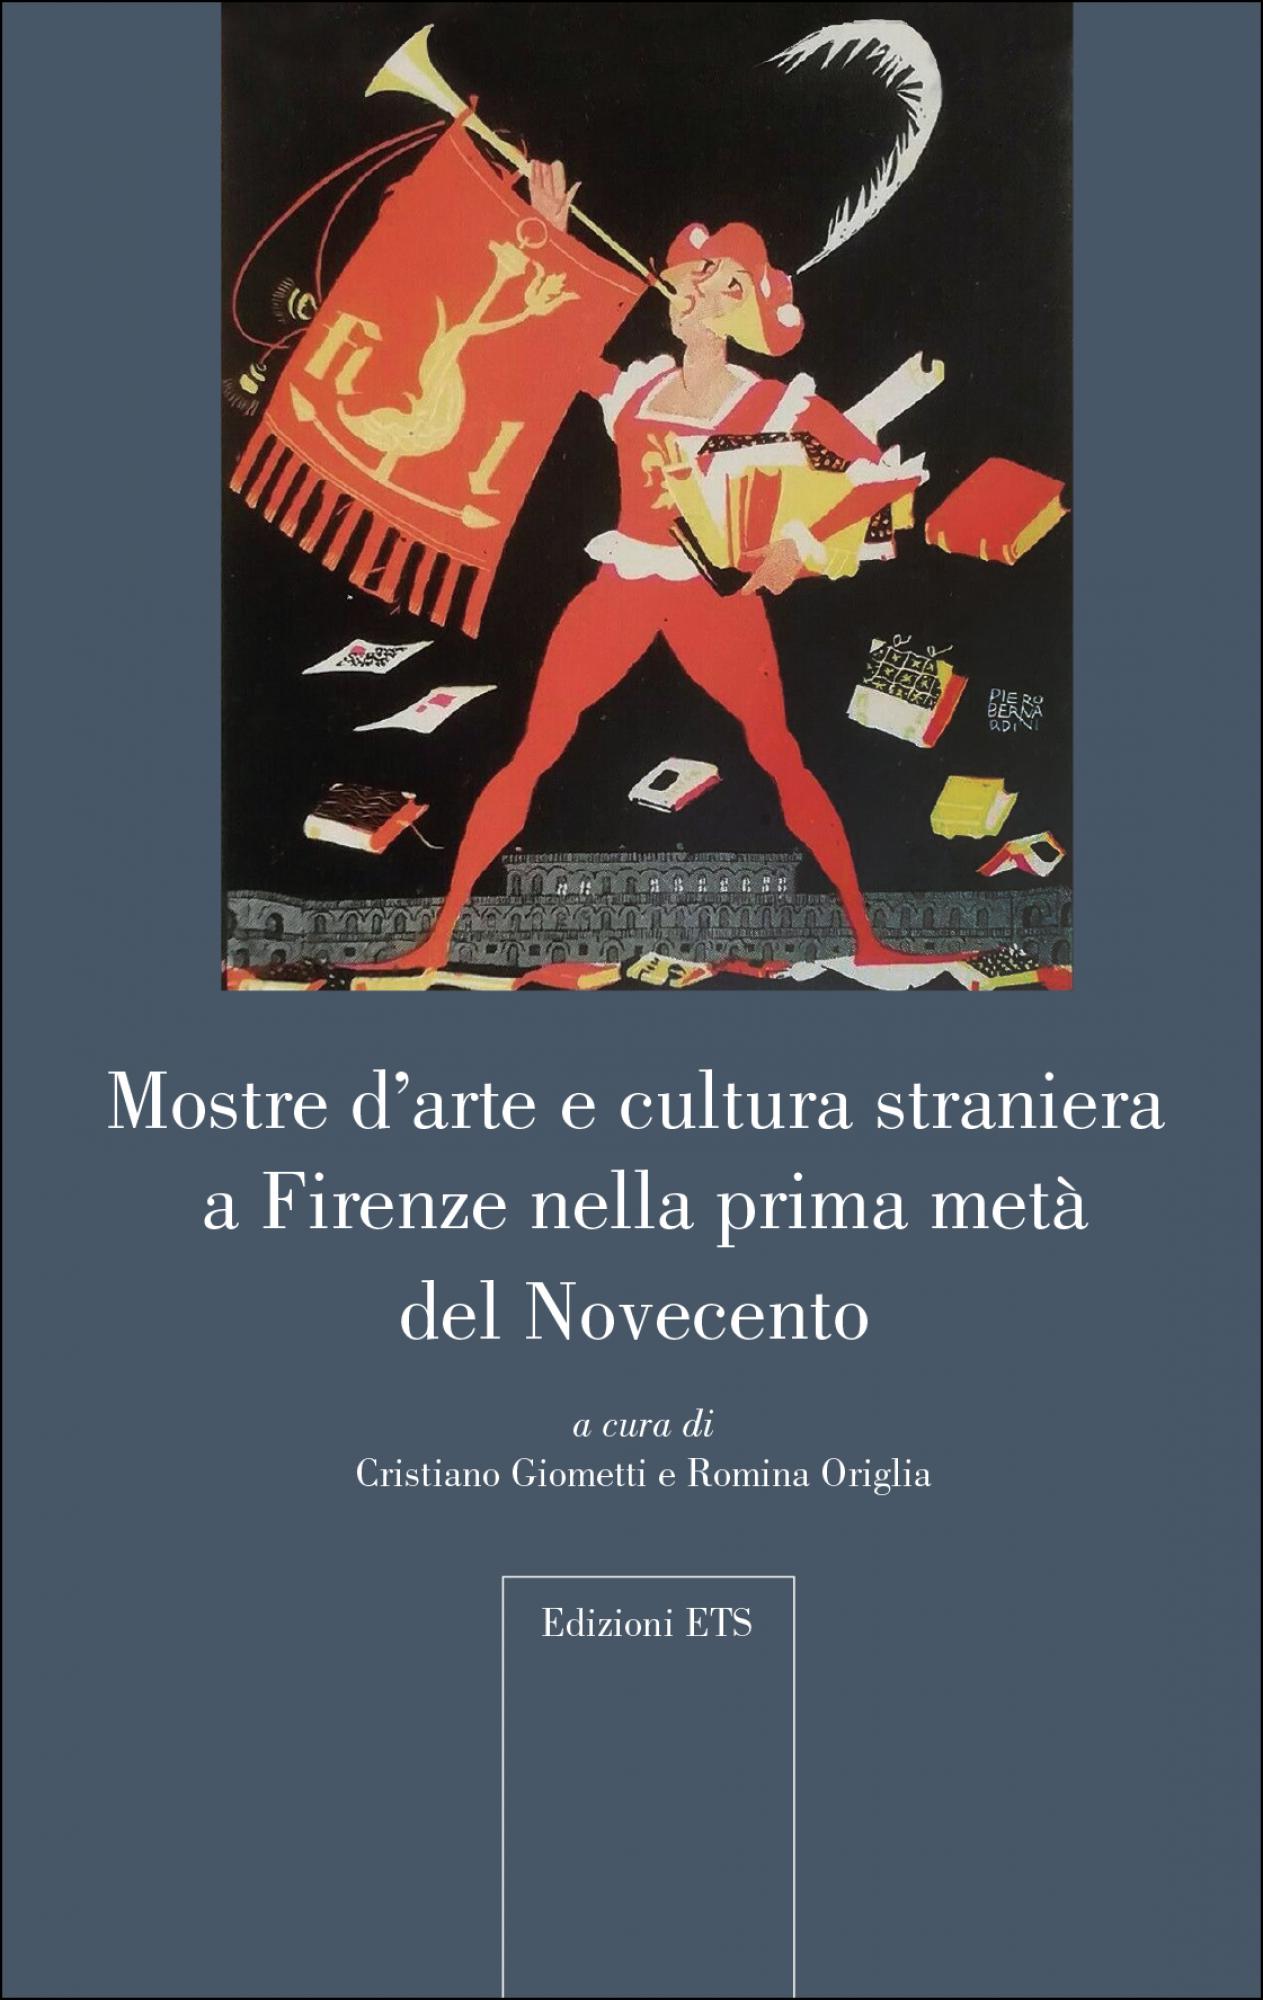 Mostre d'arte e cultura straniera a Firenze nella prima metà del Novecento